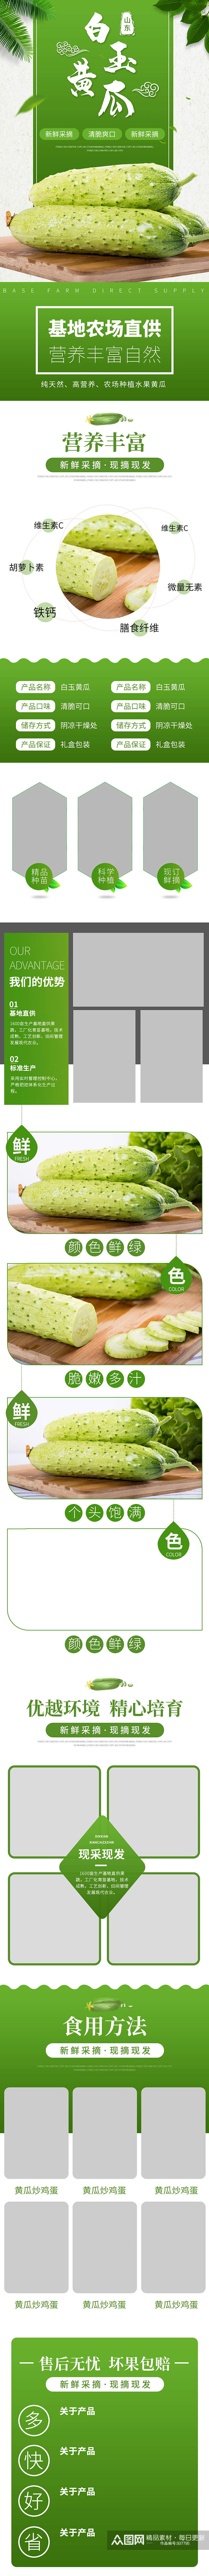 天猫农家绿色有机蔬菜黄瓜详情页模板素材